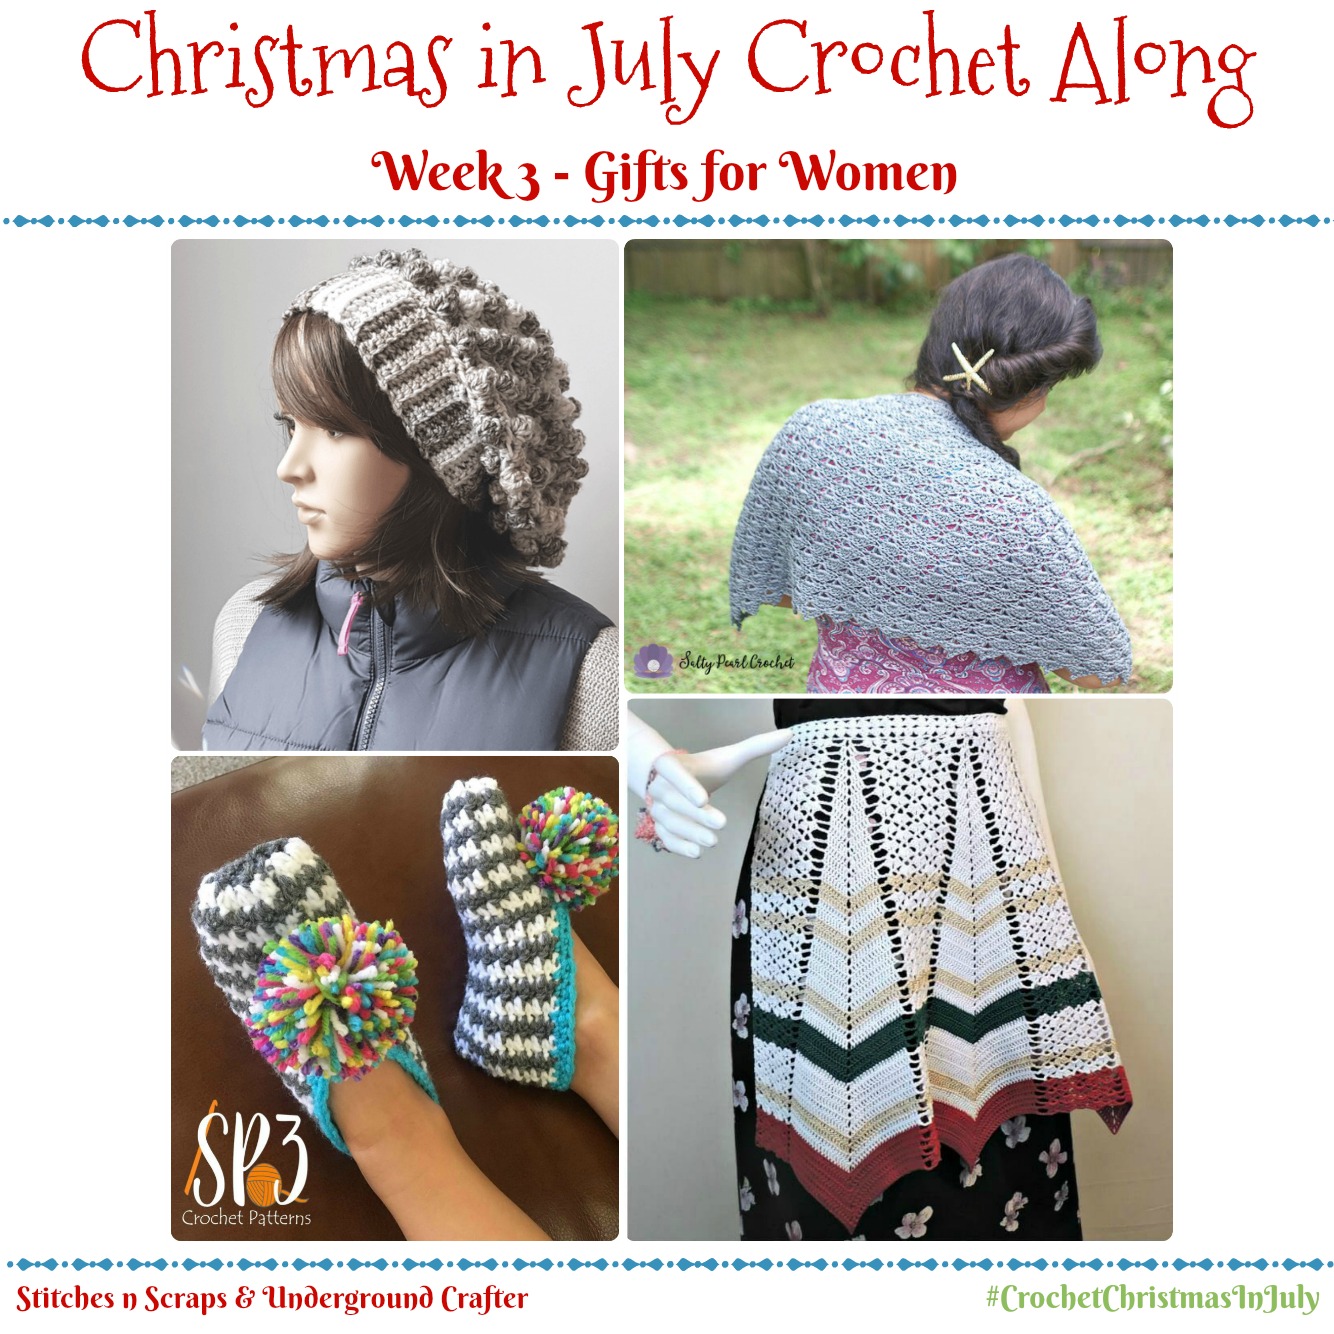 Christmas in July Crochet Along - Week 3